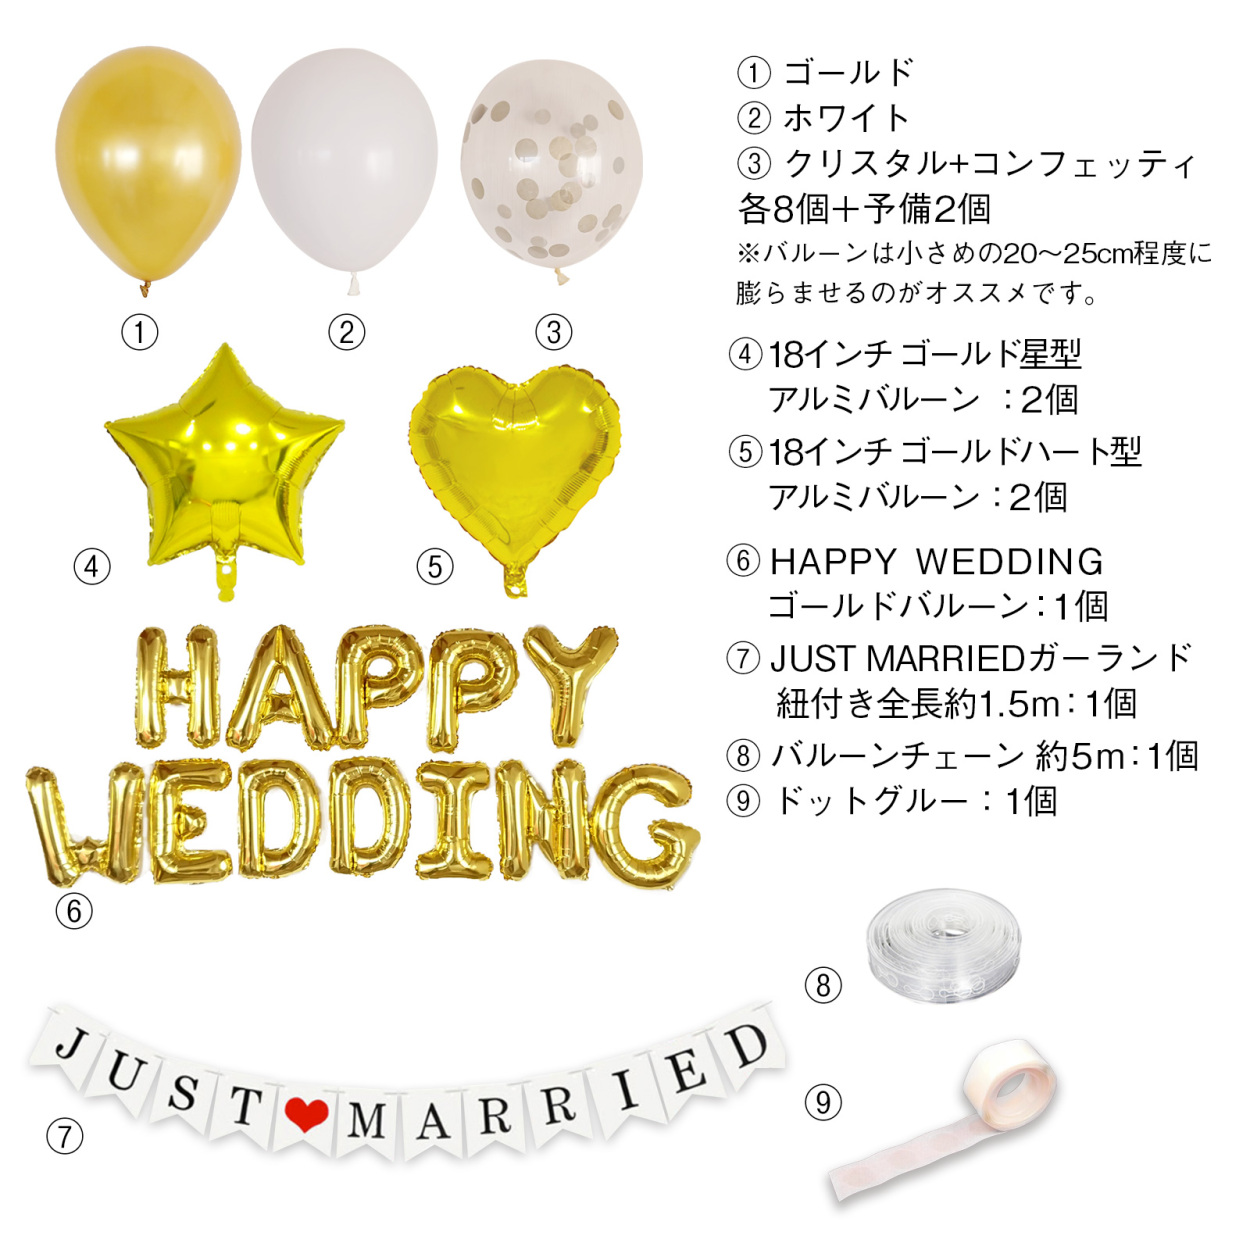 HAPPY WEDDING キット ウェディング 飾り バルーン 送料無料 アルファベット 風船 デコレーション キット 結婚式 飾り 装飾 : happywedding:ハッピーマルシェ - 通販 - Yahoo!ショッピング